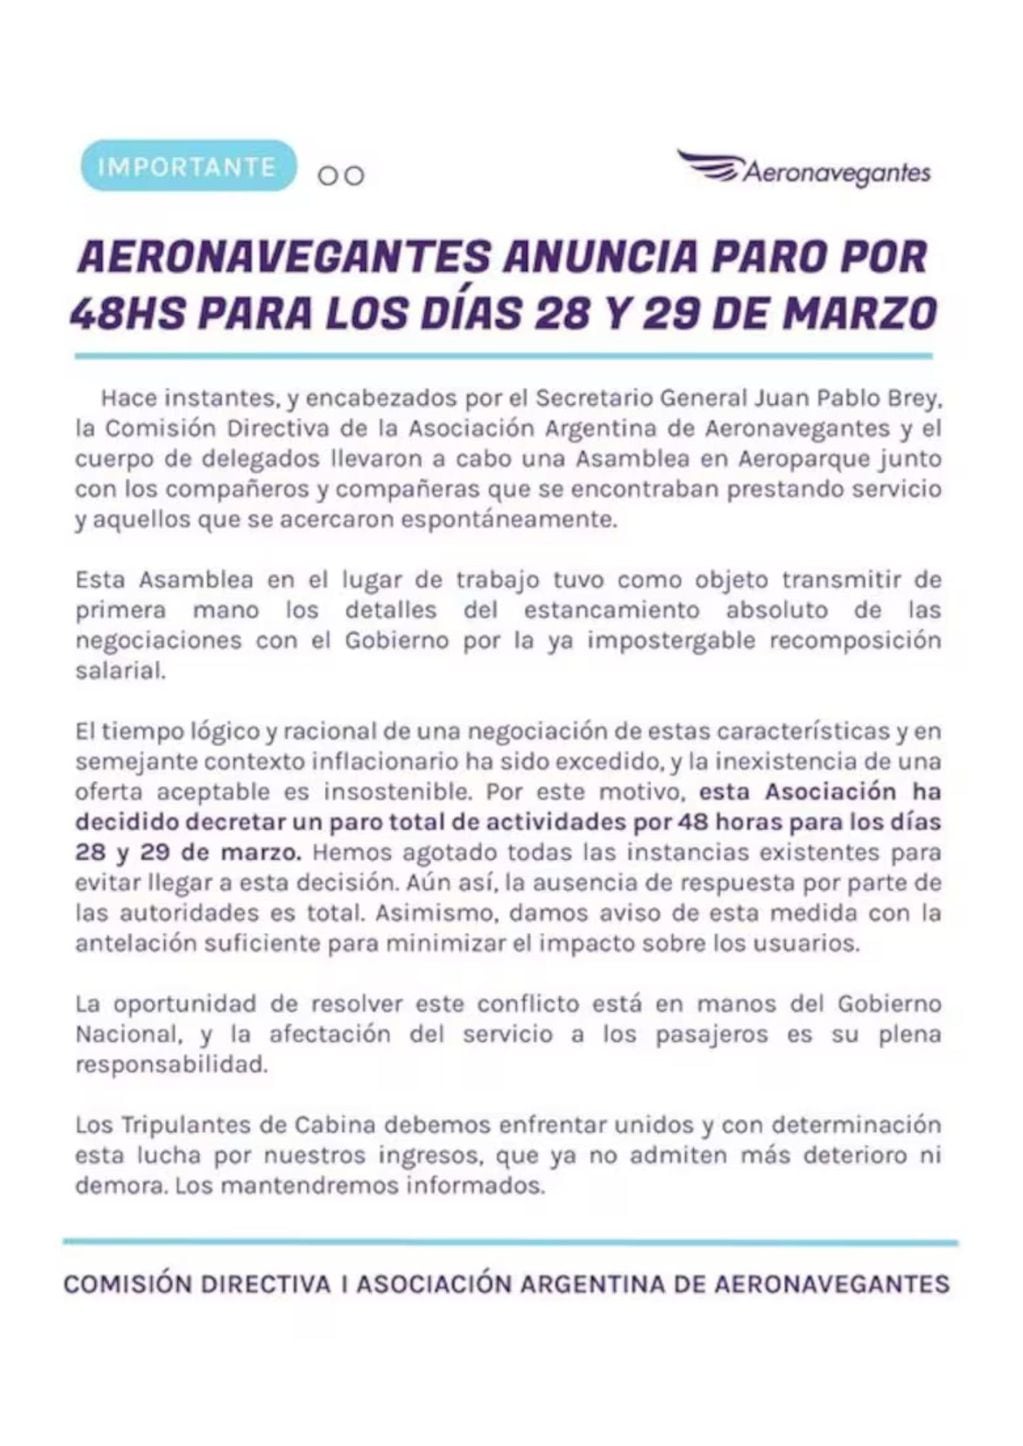 El comunicado de prensa de la Asociación Argentina de Aeronavegantes publicado hoy